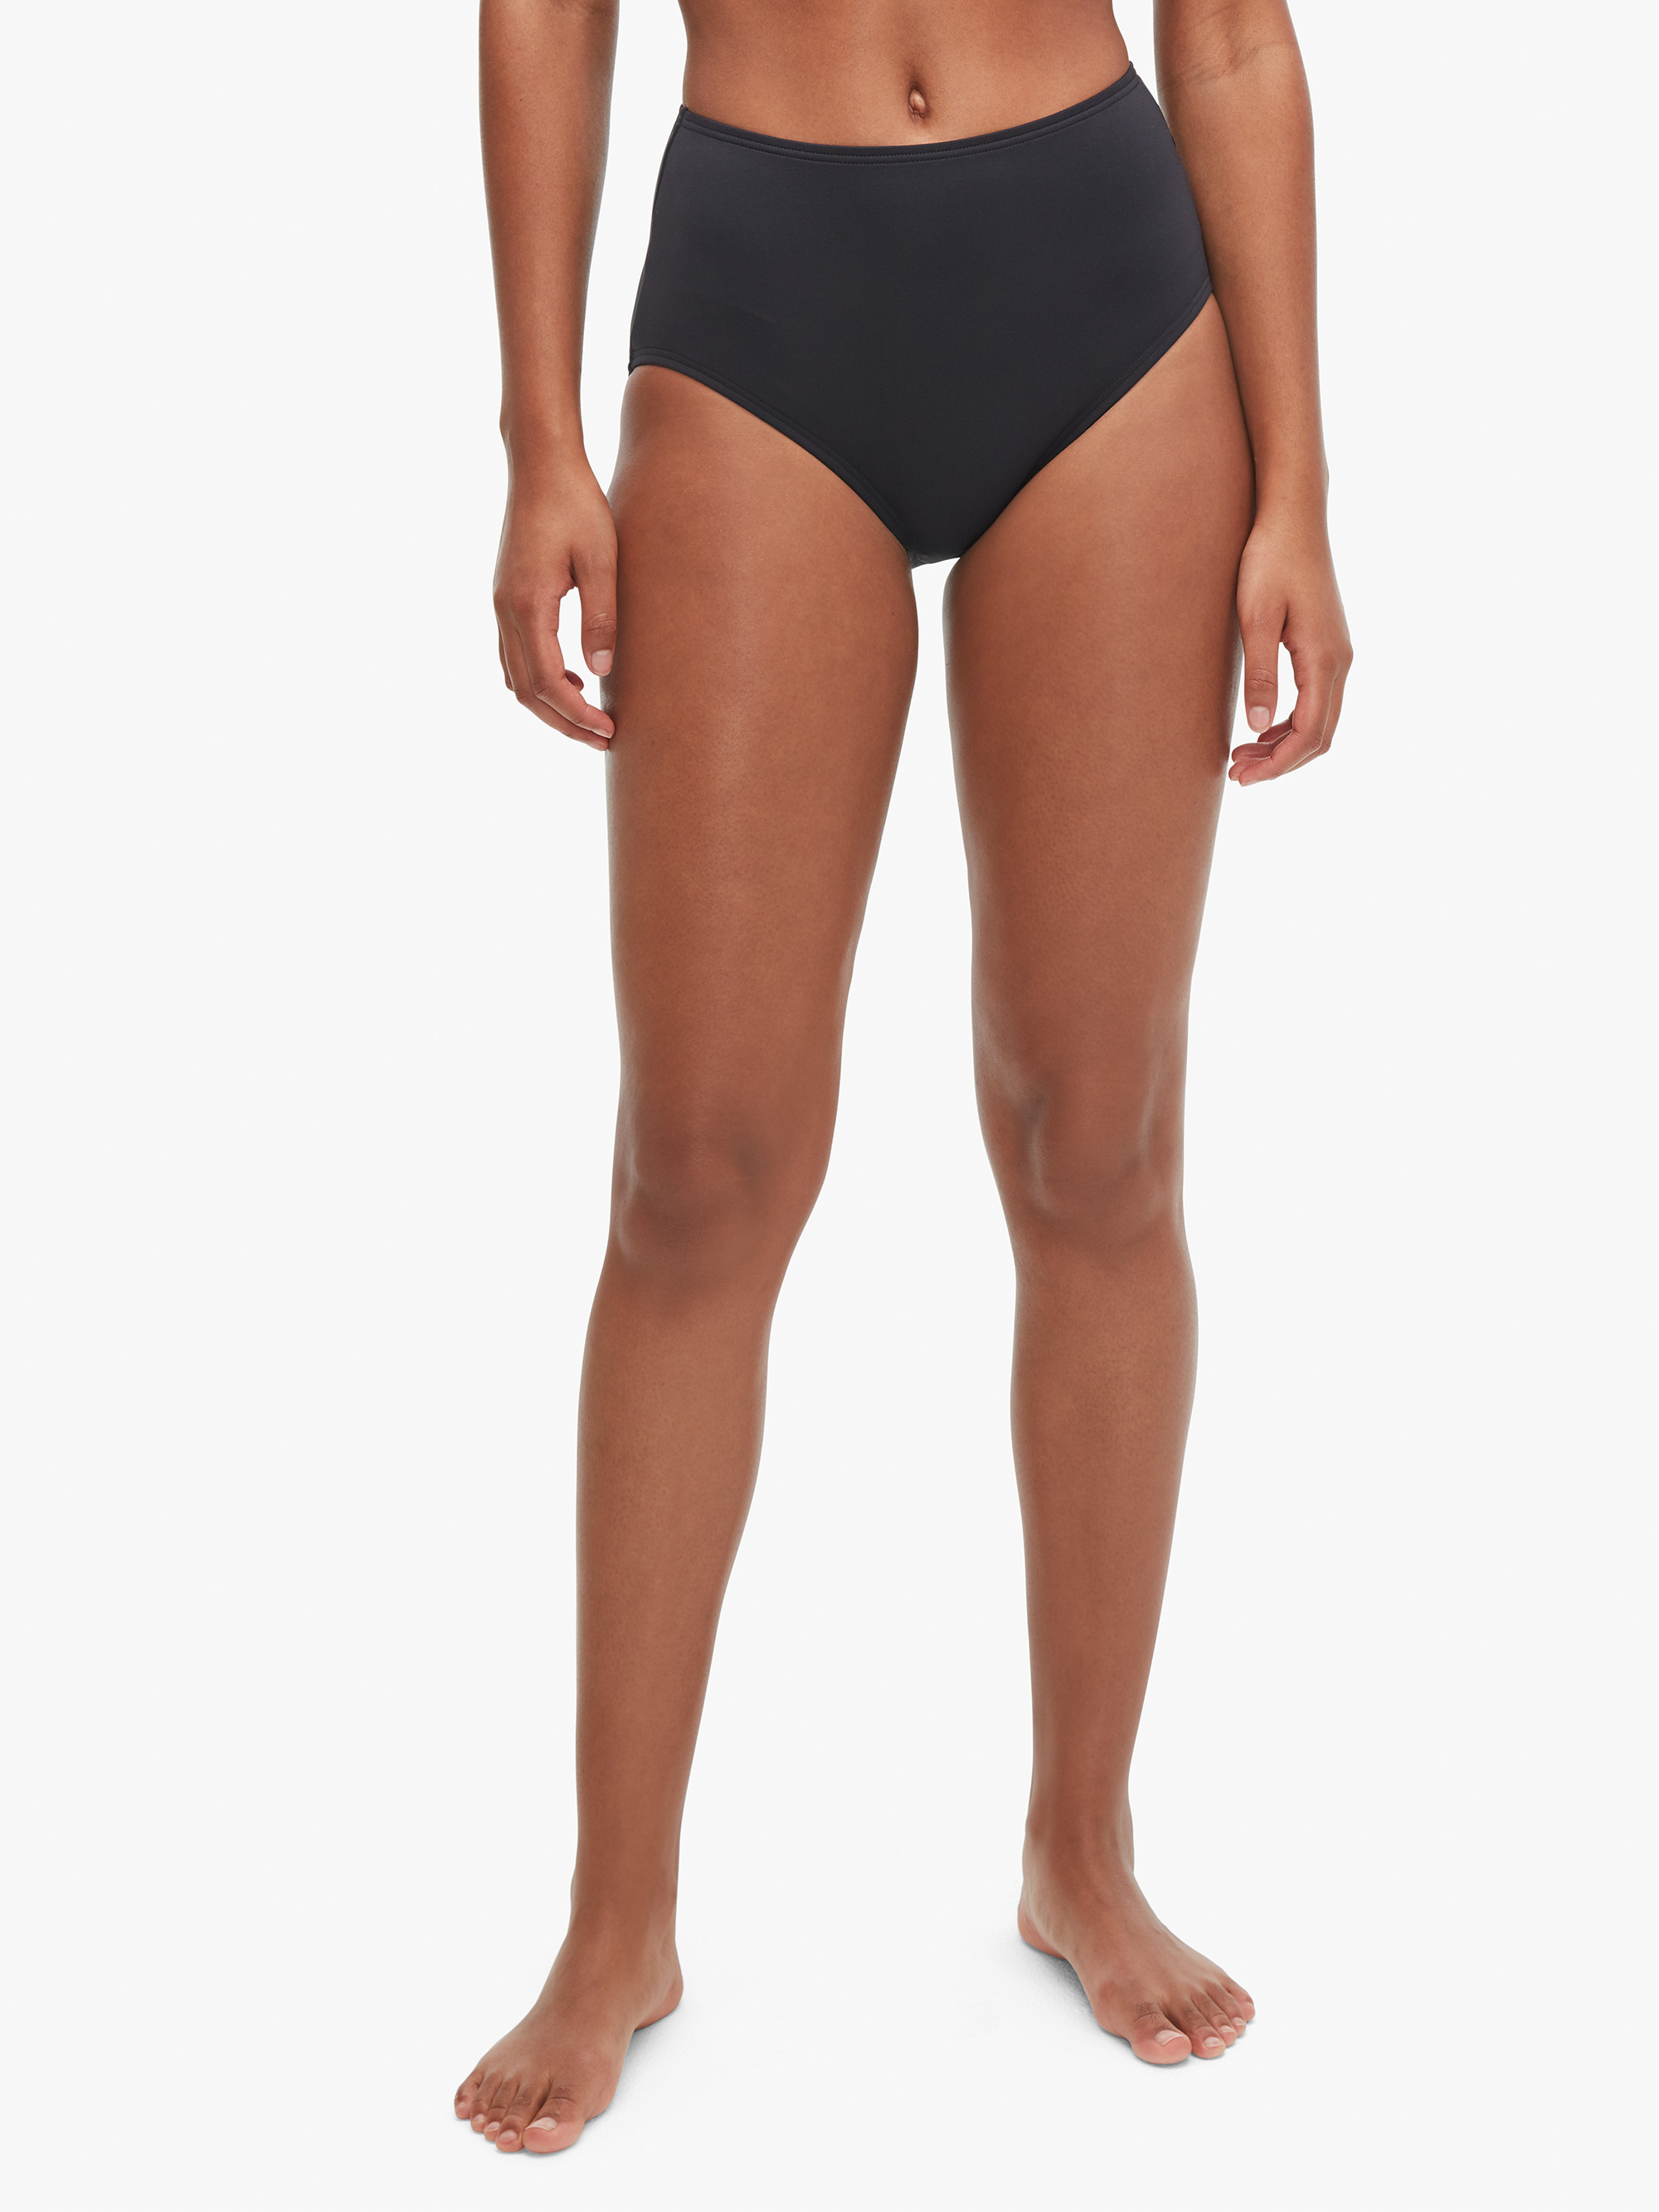 cabana high-waist bikini bottom